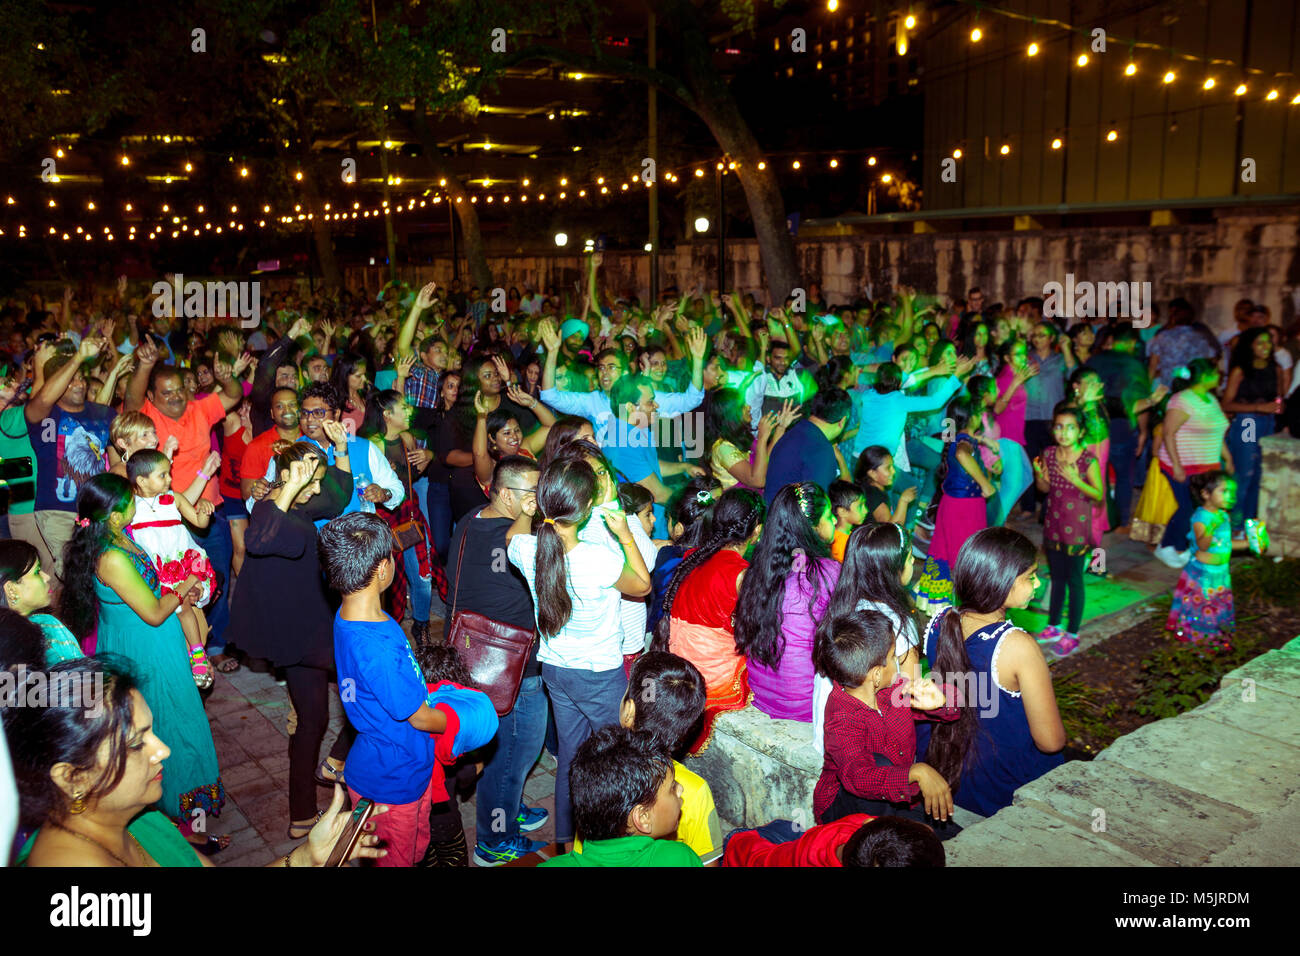 SAN ANTONIO, Texas - NOVEMBER 4, 2017 - Motion Blur von Menschen, die tanzen und das hinduistische Lichterfest Diwali, einer der beliebtesten Festi singen Stockfoto